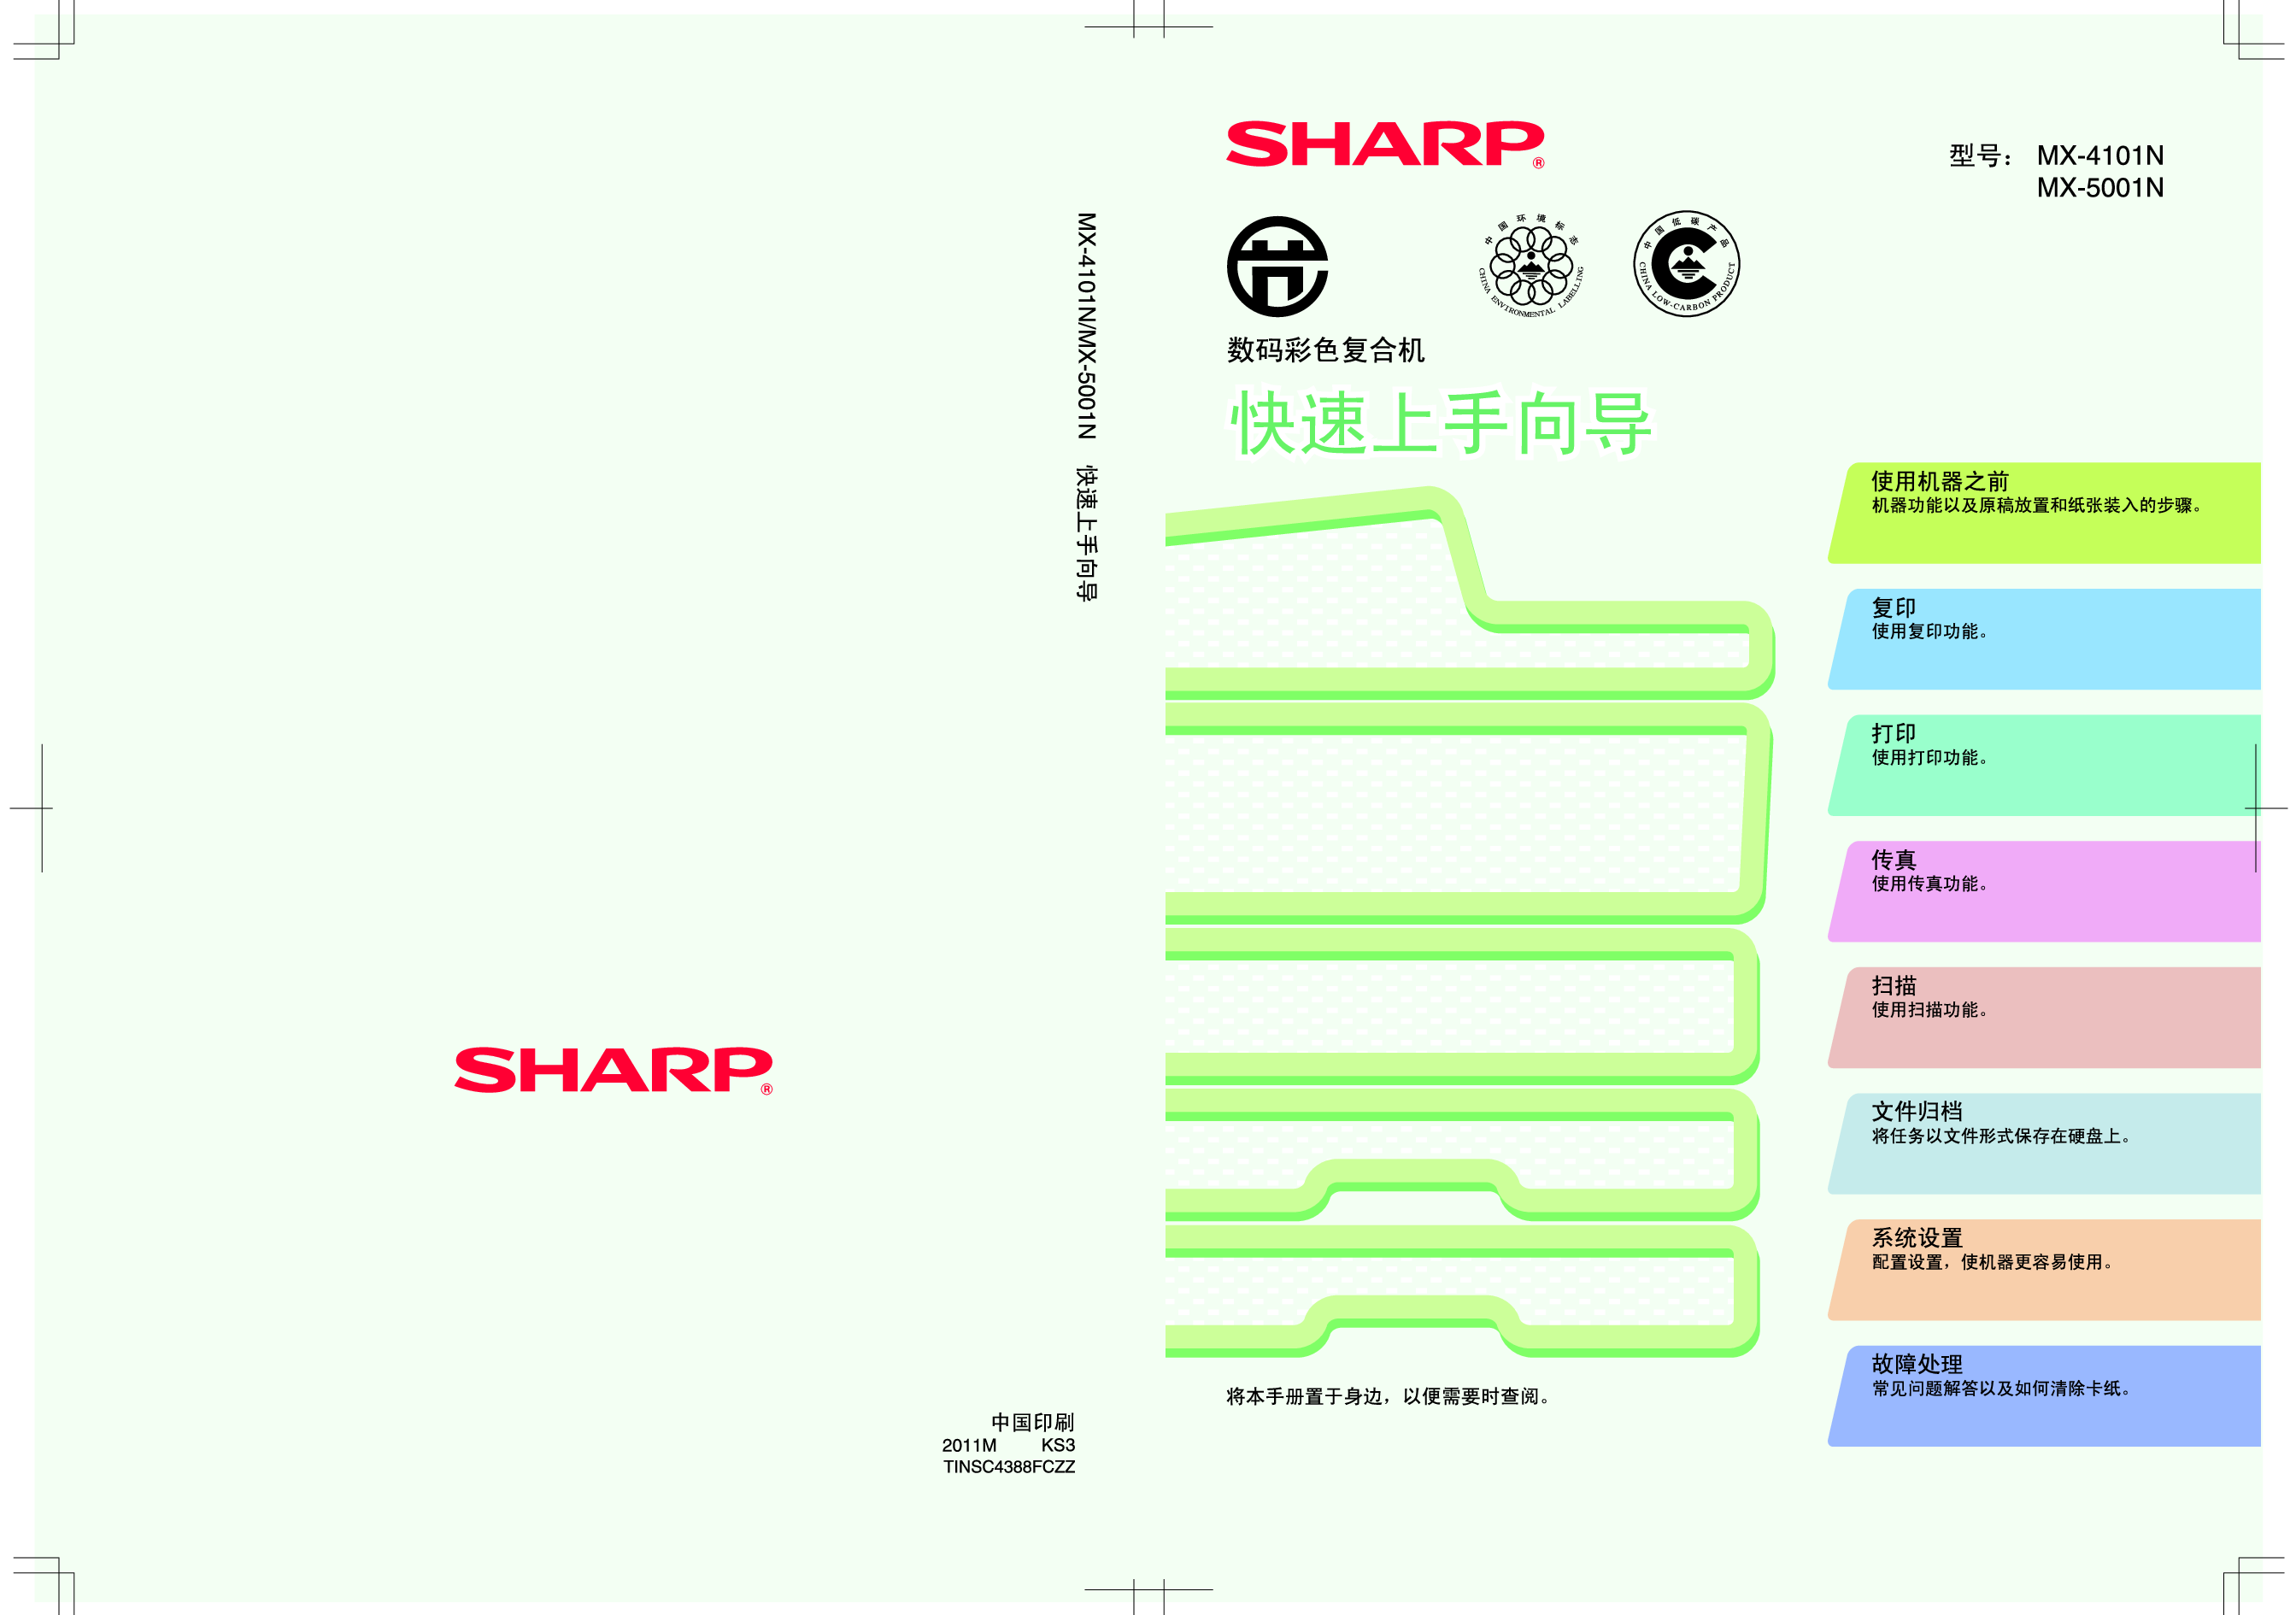 夏普 Sharp MX-4101N 快速用户指南 封面